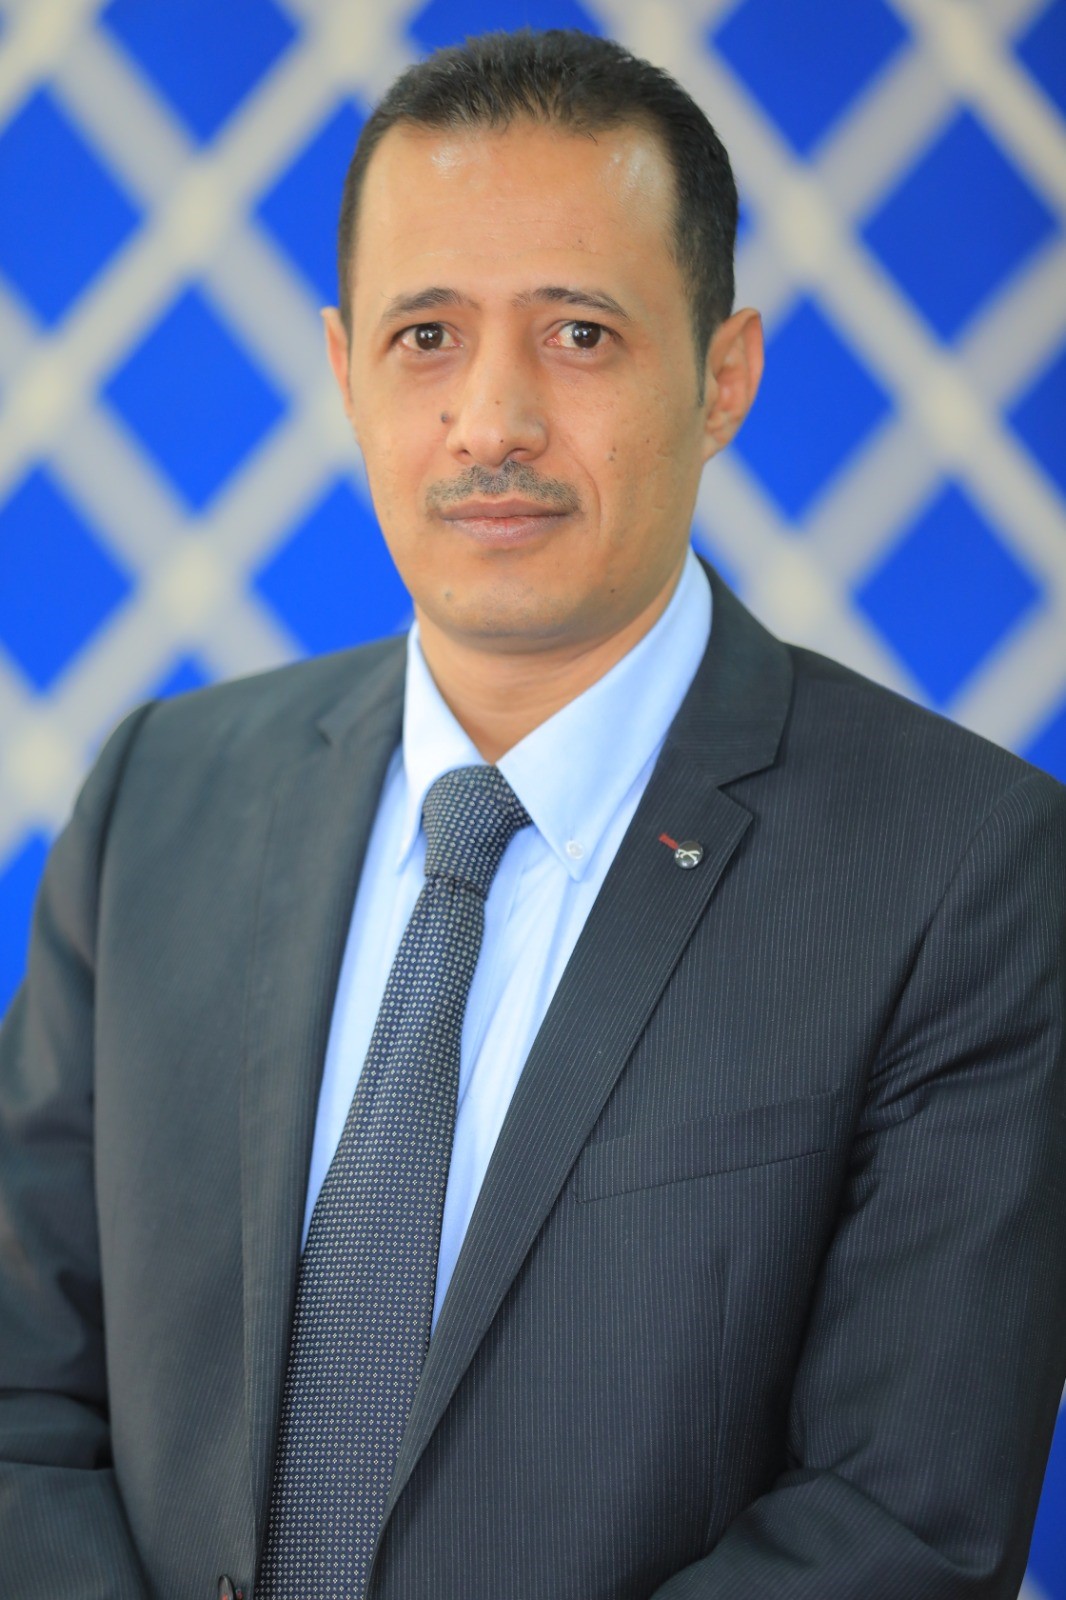 Muneer Al-Hakimi